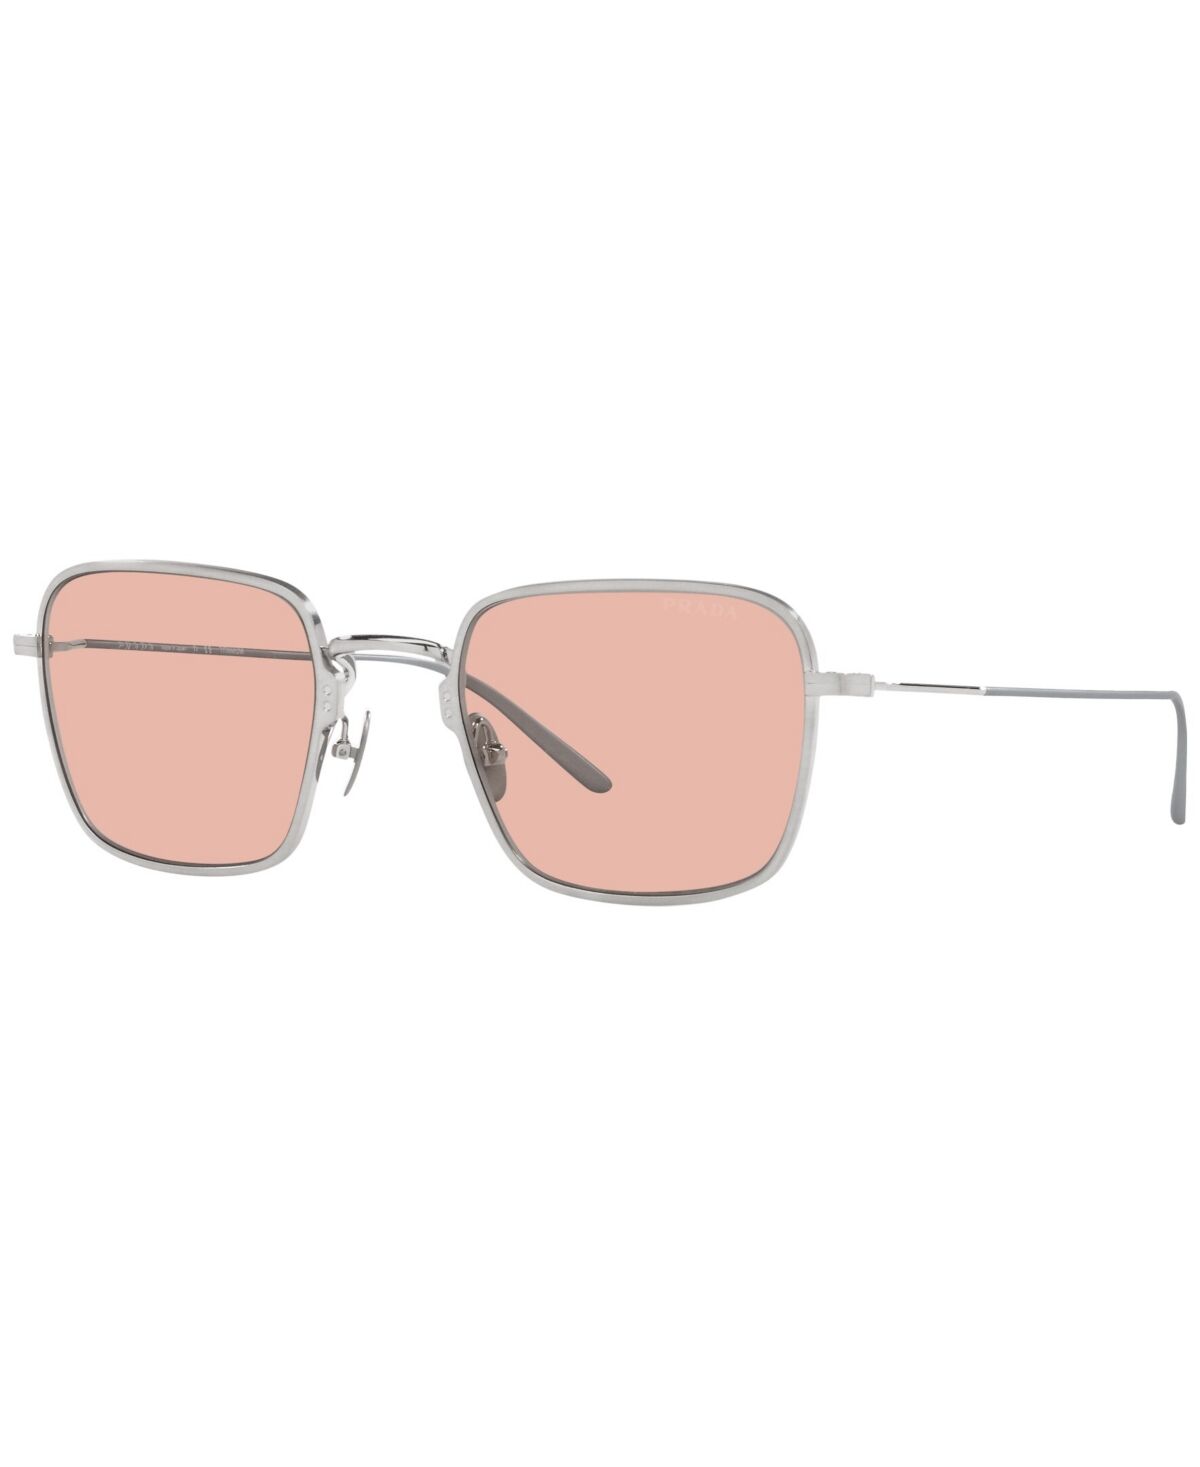 Prada Men's Sunglasses, Pr 54WS 52 - Satin Titanium